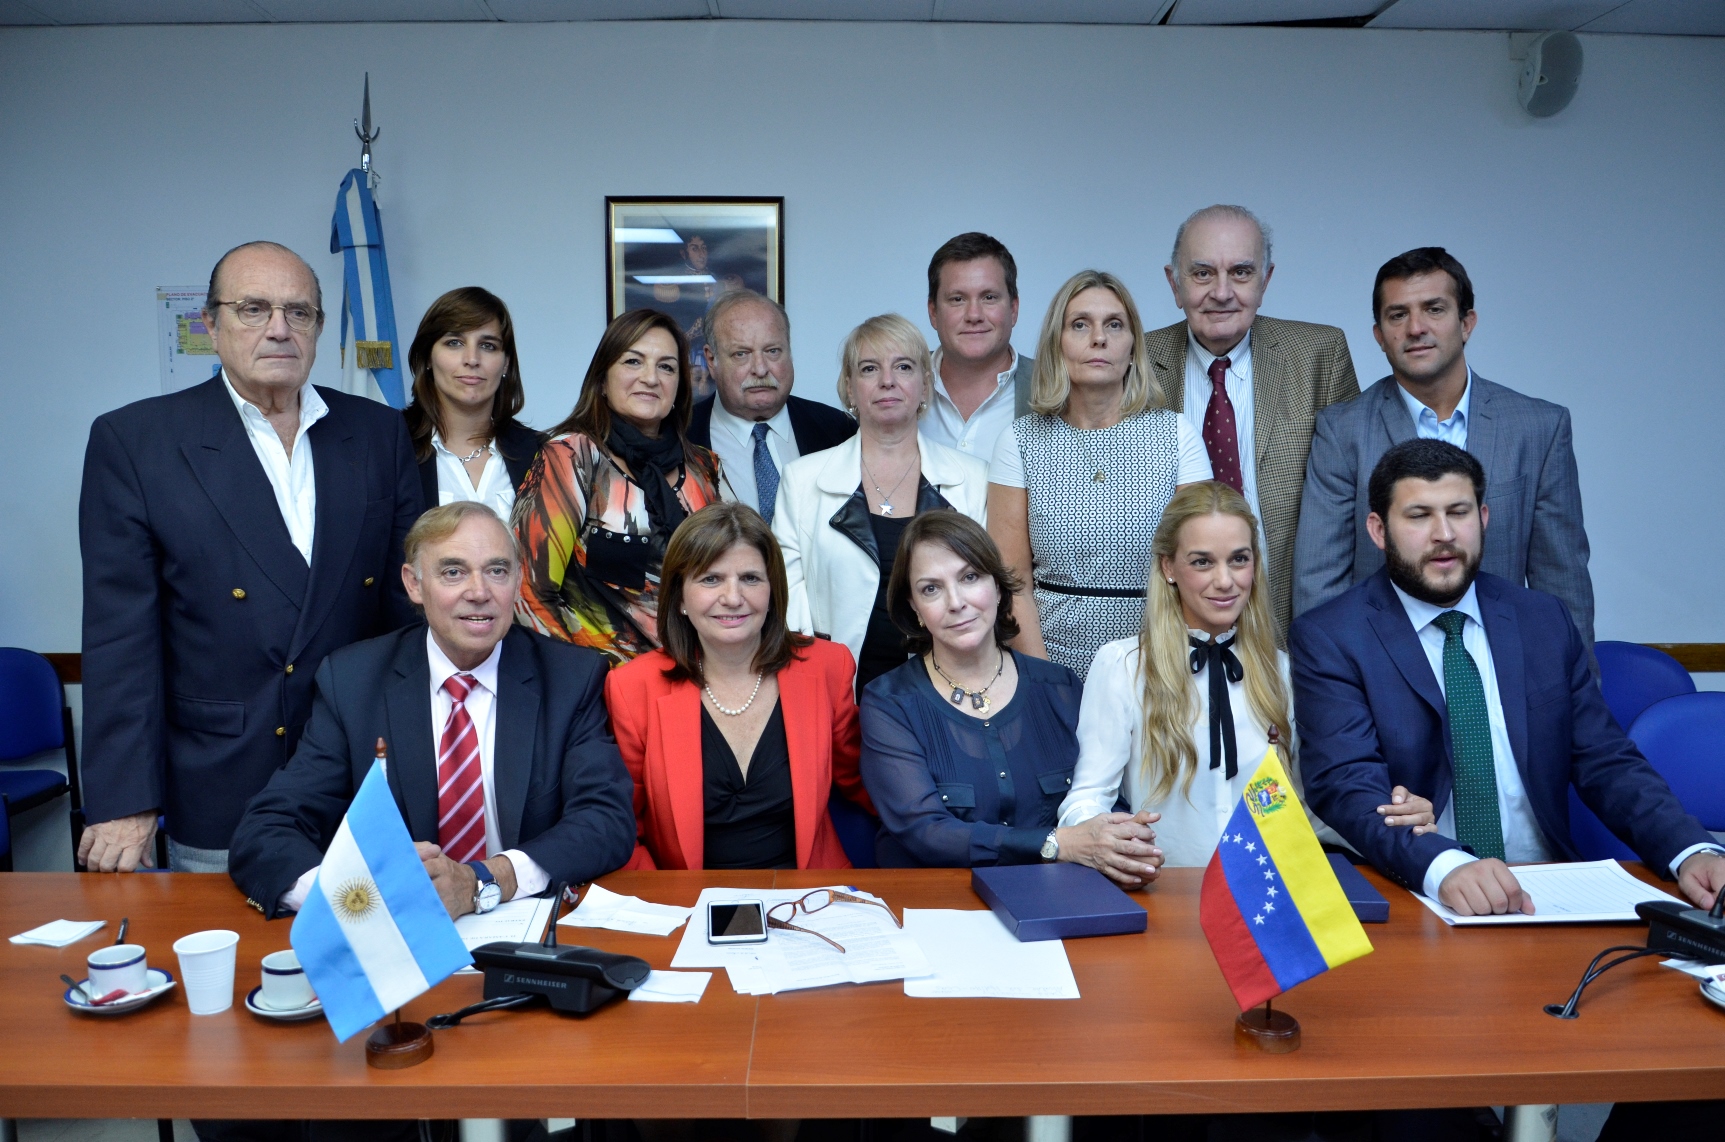 Los parlamentarios argentinos apoyaron el pedido de respeto por los derechos humanos en Venezuela. (XXX)